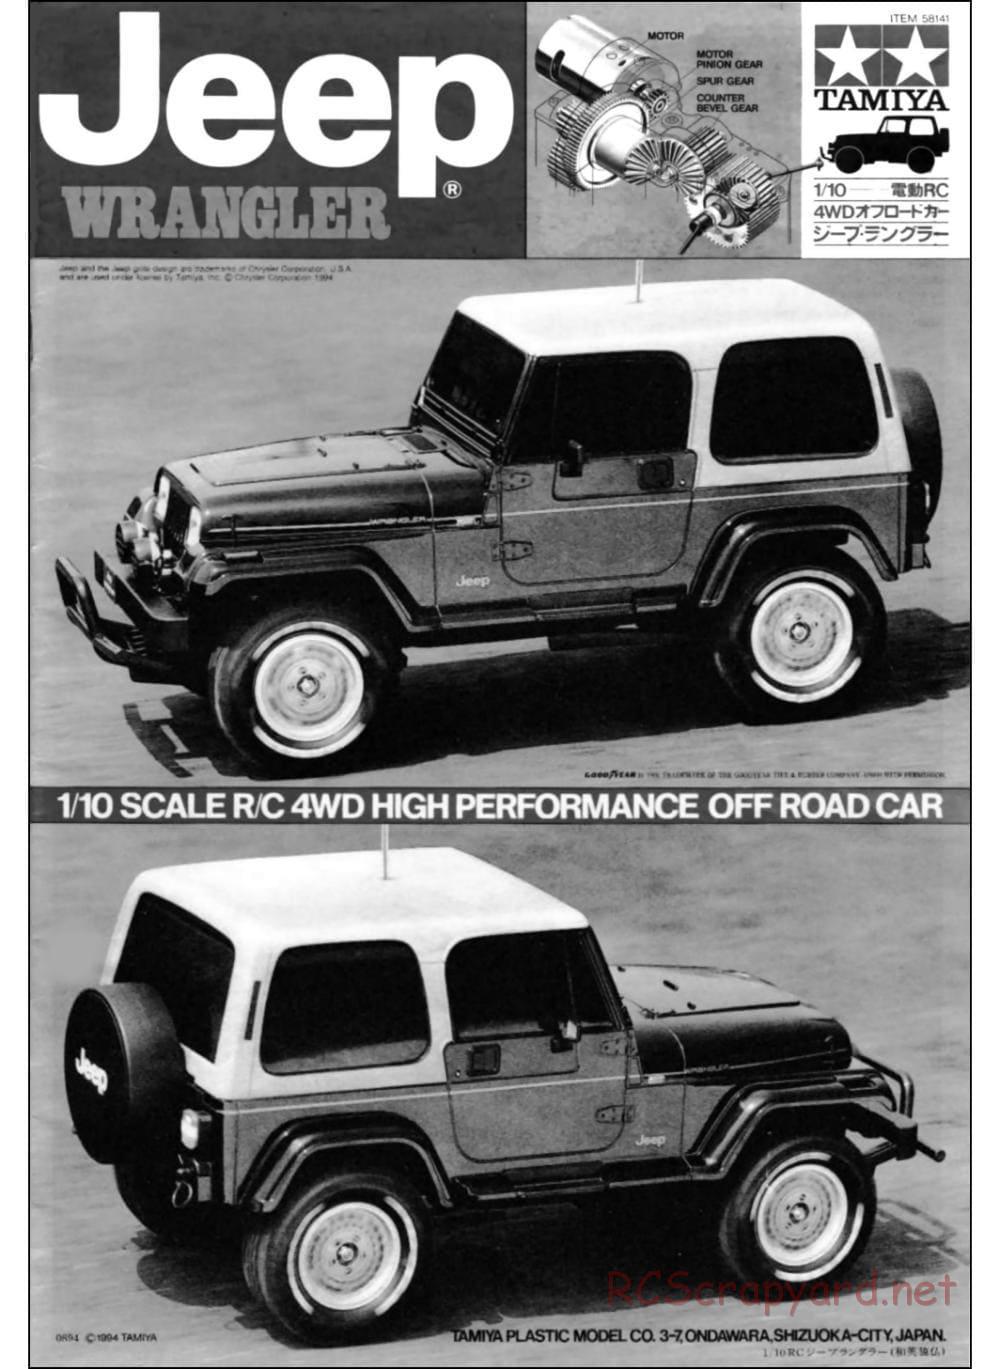 Tamiya - Jeep Wrangler - CC-01 Chassis - Manual - Page 1